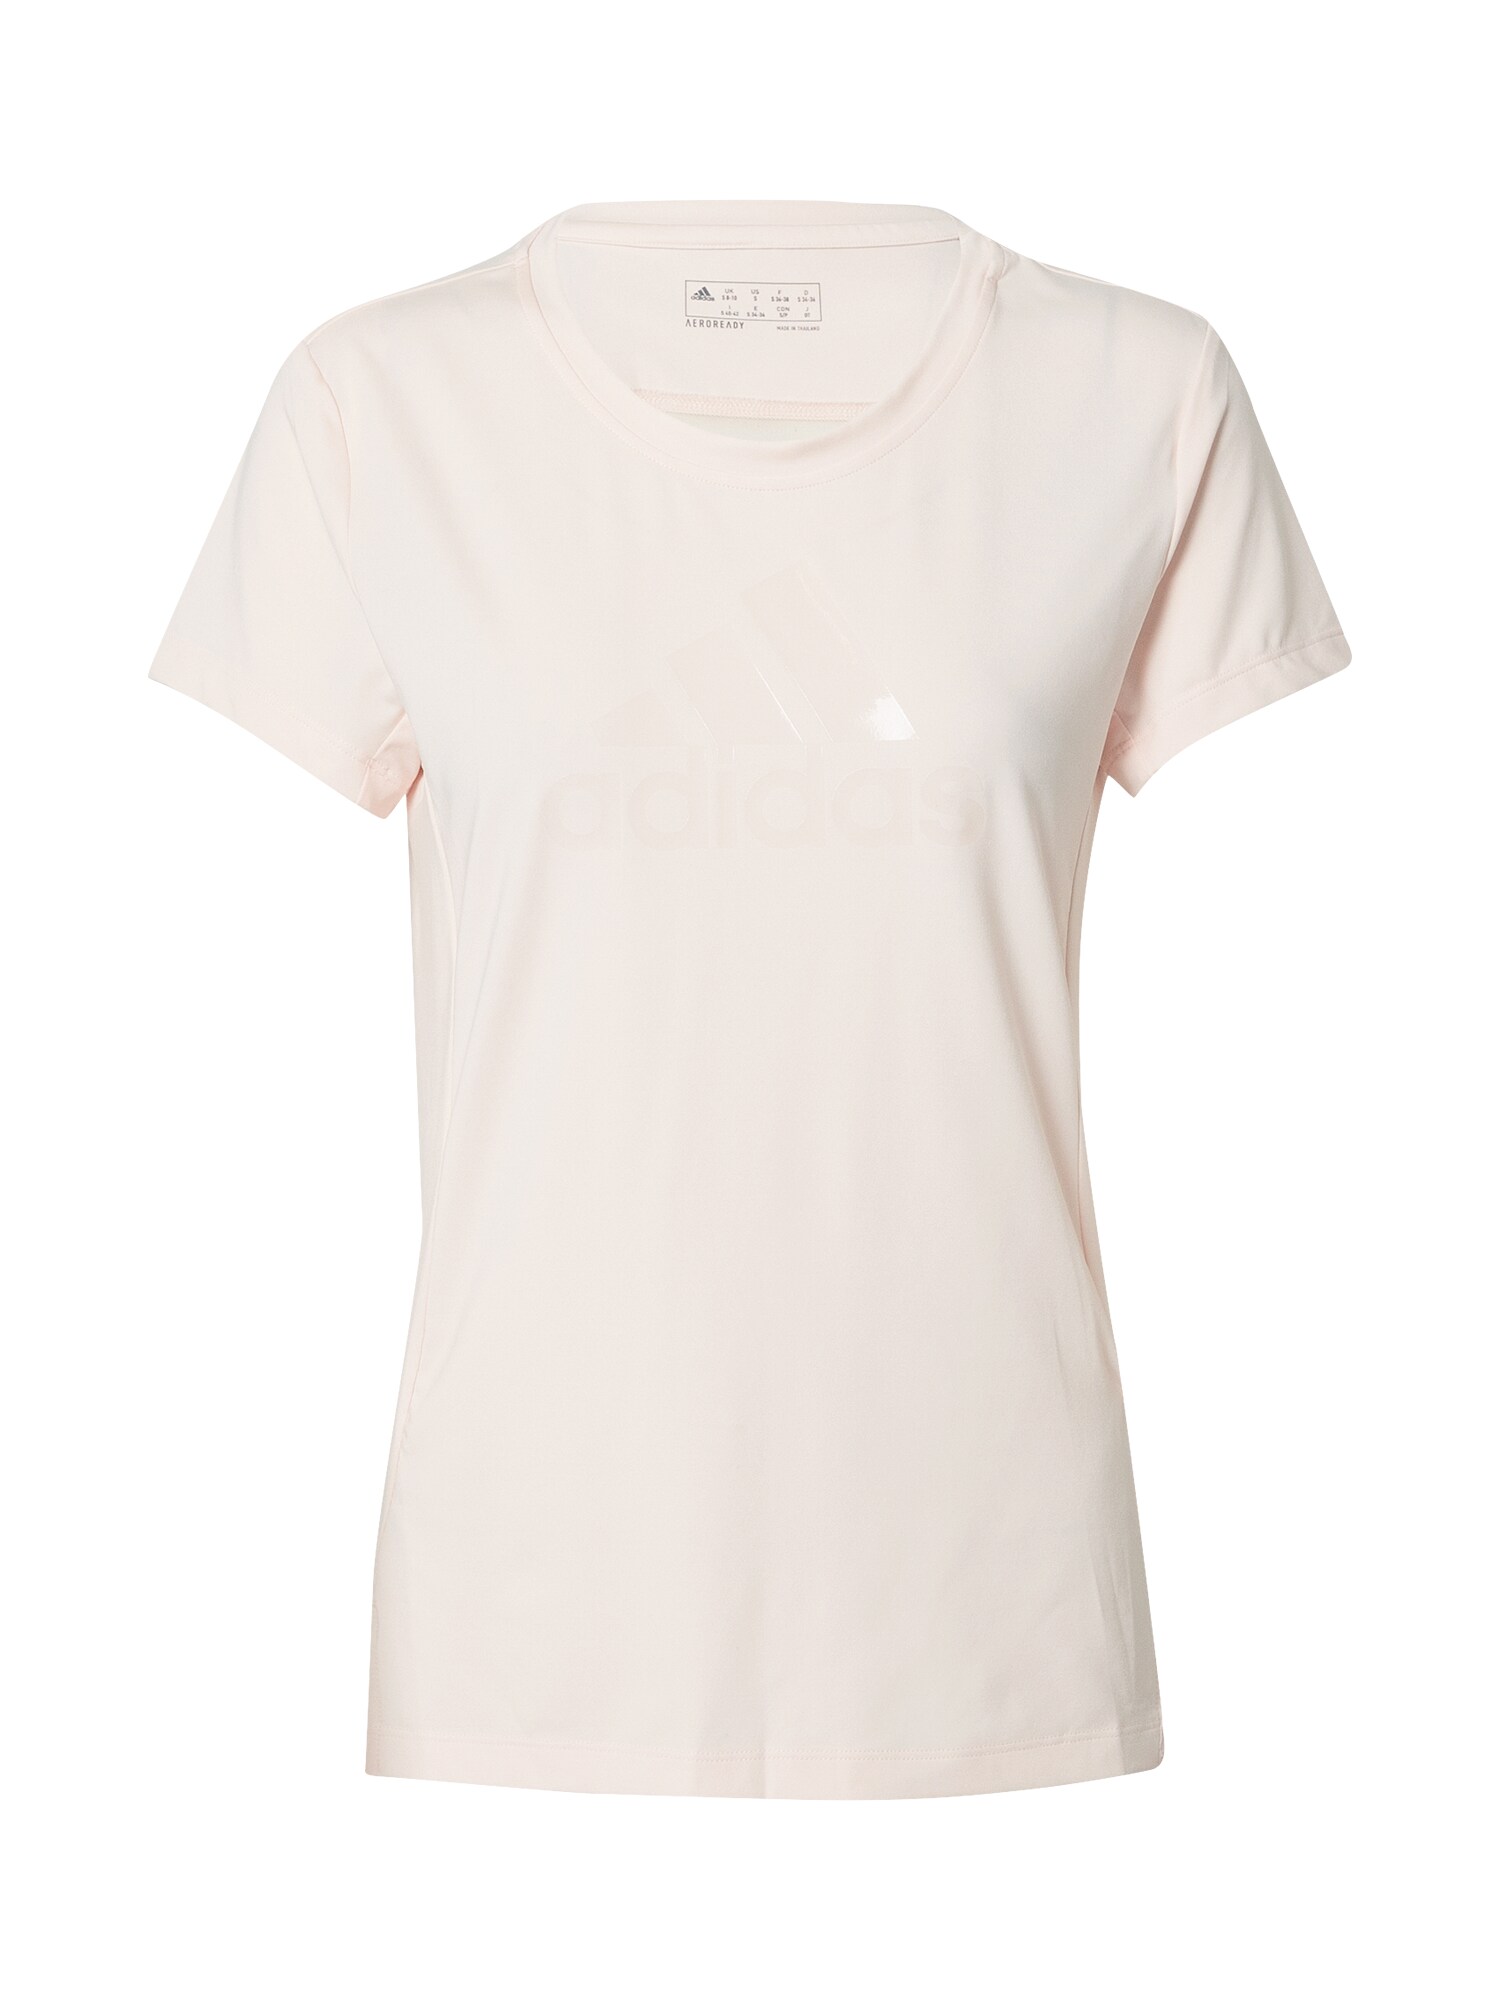 ADIDAS PERFORMANCE Sportiniai marškinėliai  pudros spalva / balta